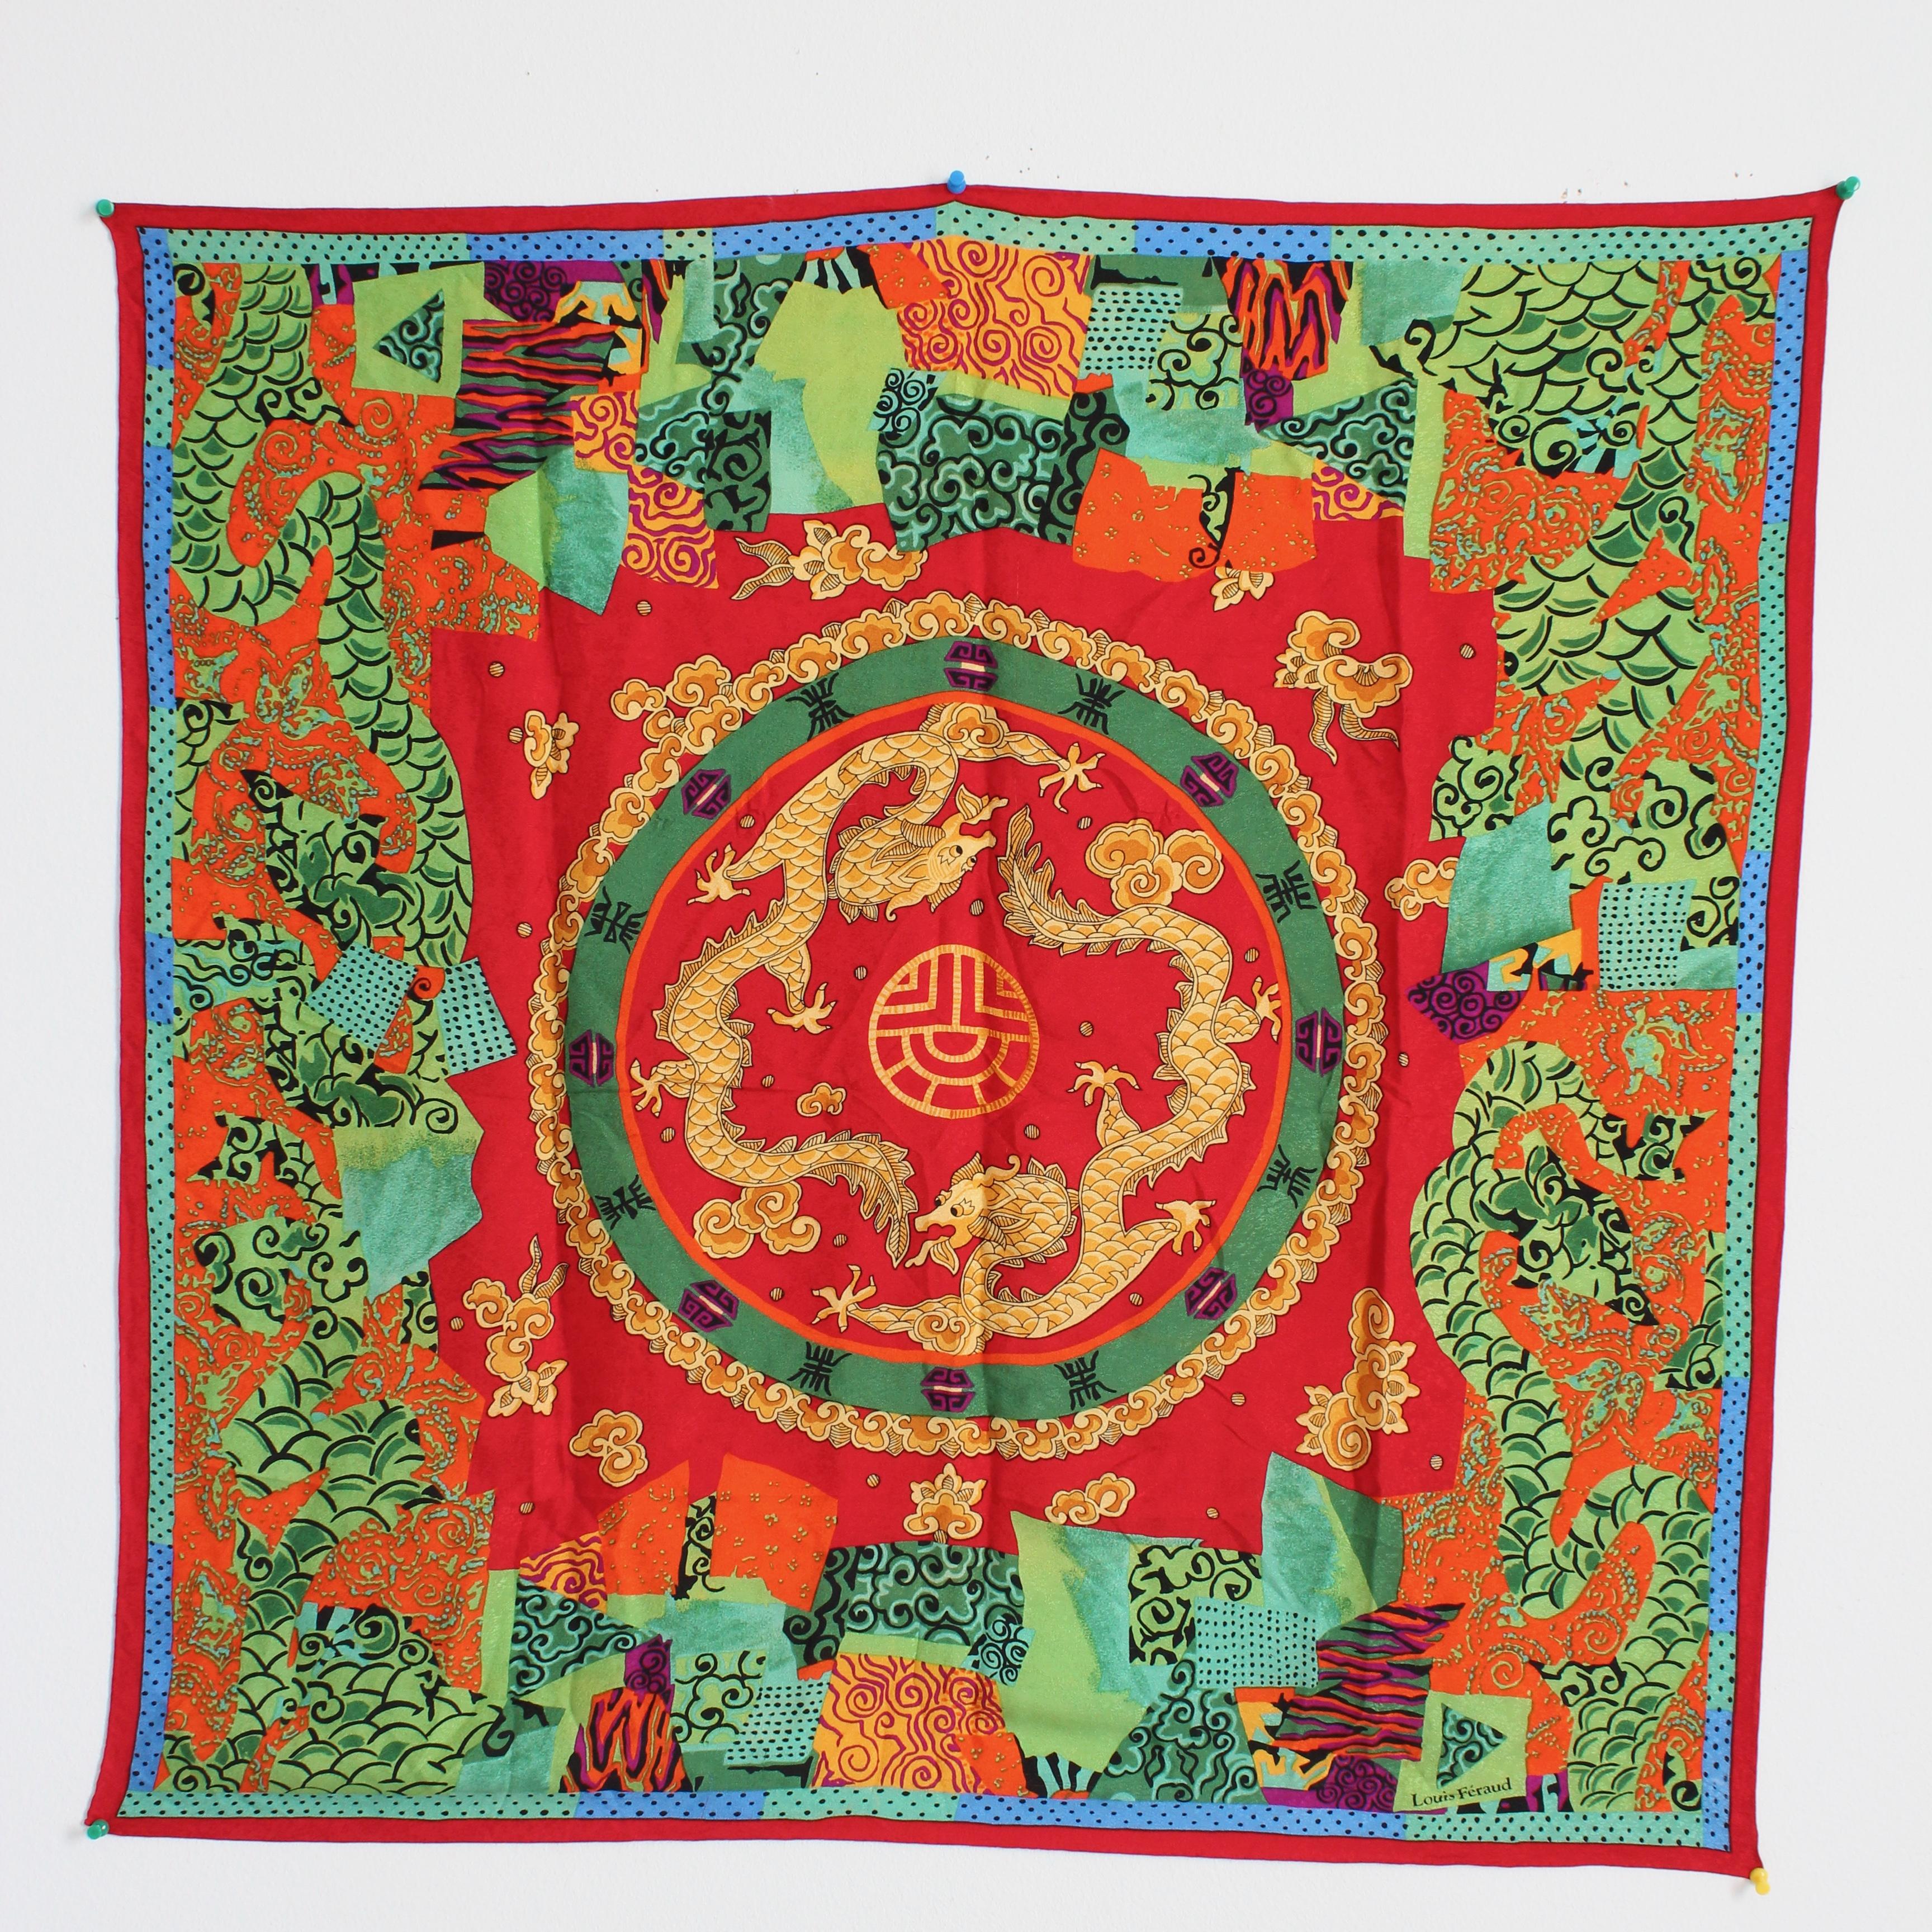 Dieser schöne Jacquard-Schal aus Seide wurde von Louis Feraud wahrscheinlich in den späten 1980er Jahren hergestellt. Es ist aus wunderschöner roter Seide gefertigt und zeigt tanzende goldene Drachen und andere asiatische Motive und Symbole. 

Ein